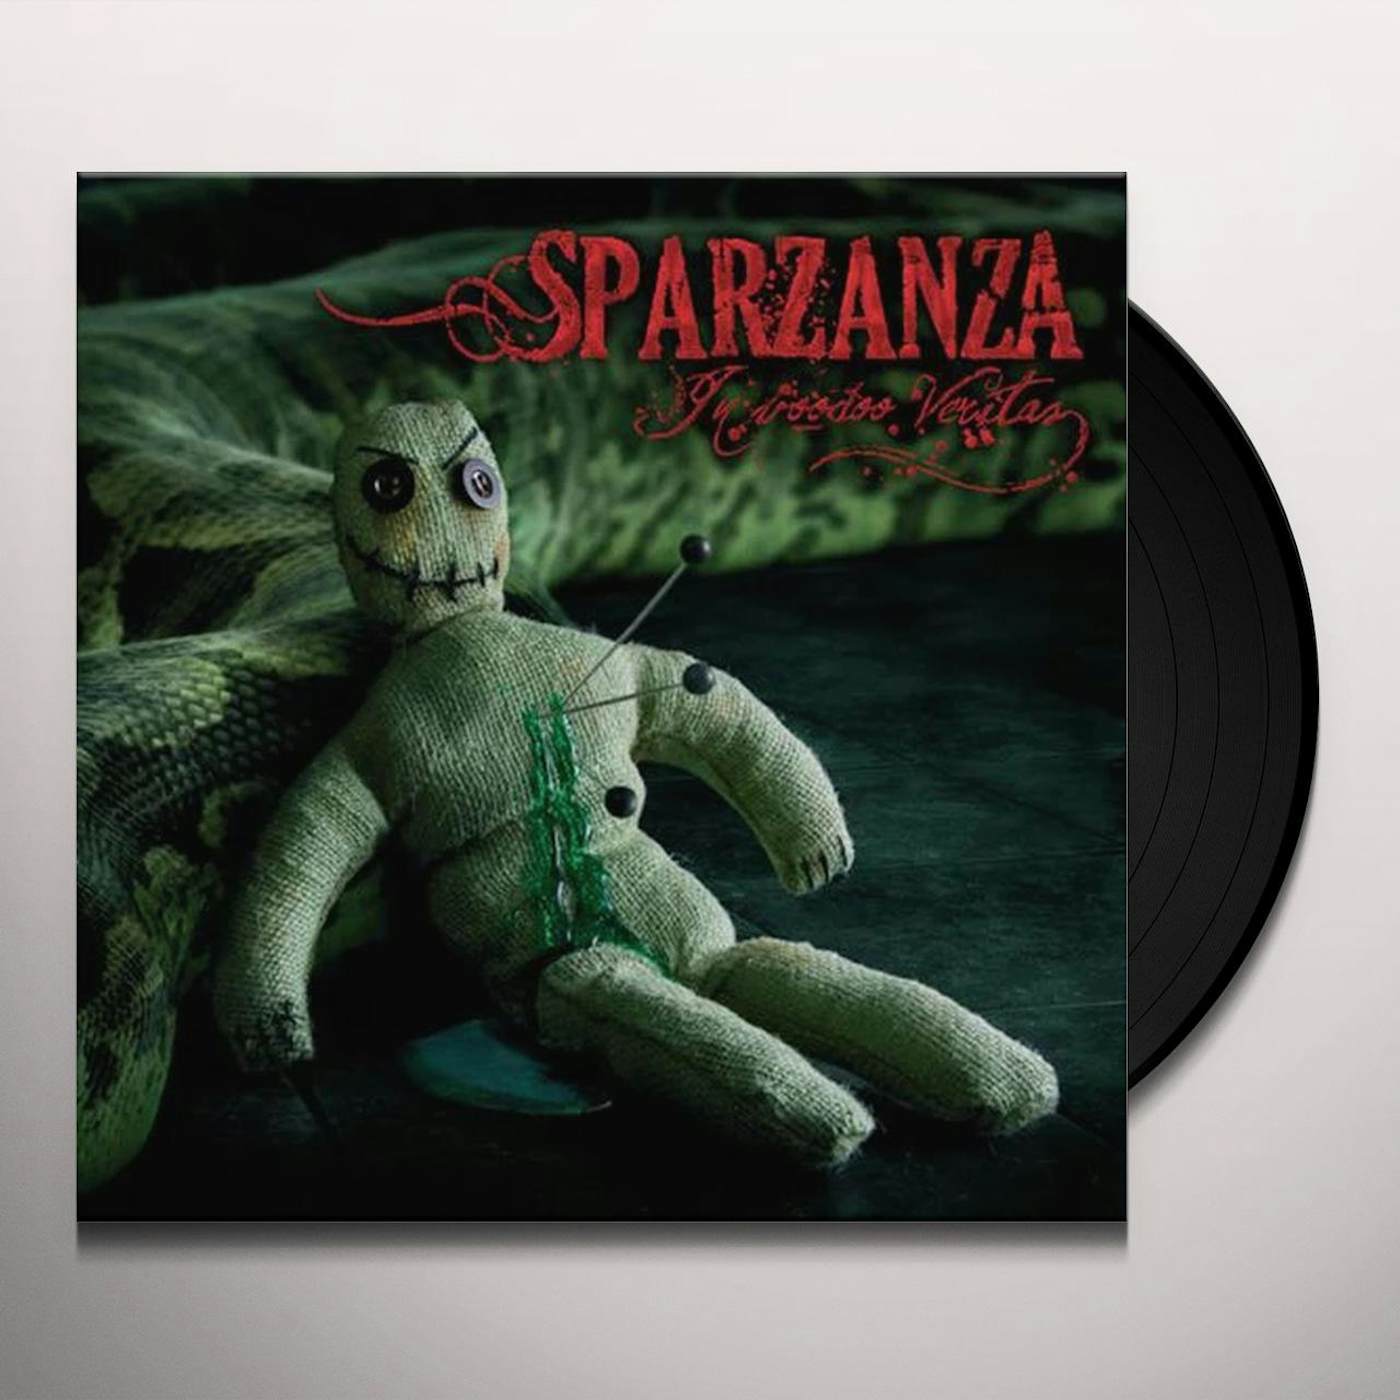 Sparzanza In Voodoo Veritas Vinyl Record